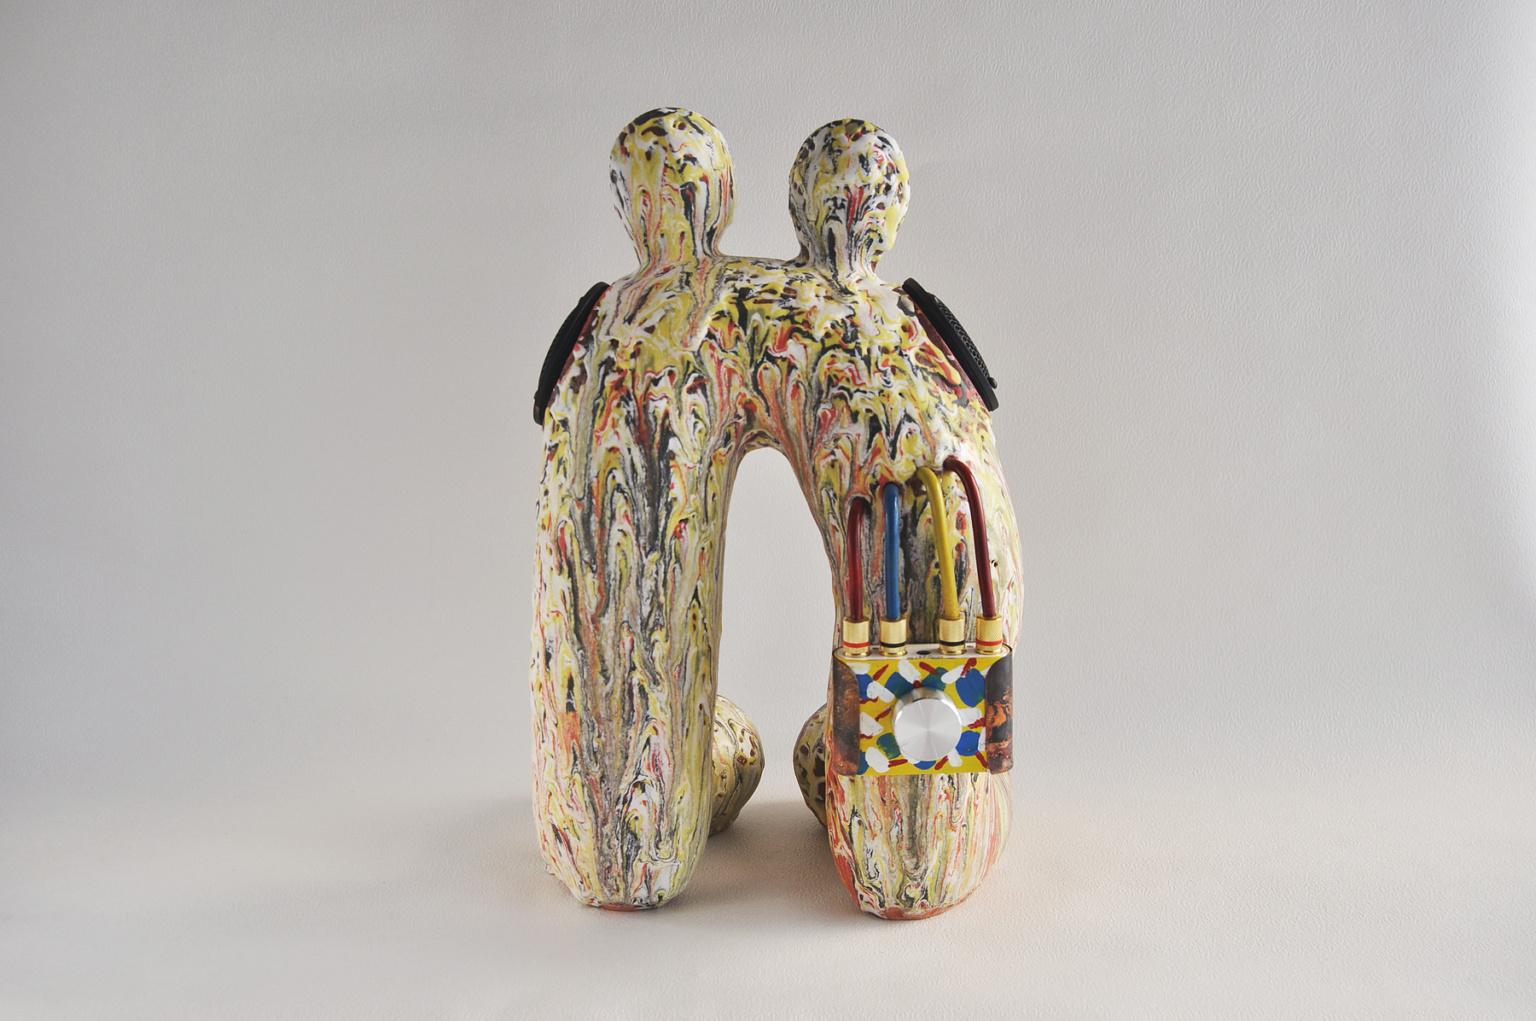 Ein funktionierender Keramiklautsprecher (Bluetooth/Kabel) des japanischen Künstlers Hiroyuki Yamada.

Hiroyuki Yamada (* 1970, Hyogo Pref., Japan). Yamada stellt seine Werke seit Anfang der 1990er Jahre aktiv aus und erlangte sowohl in Japan als